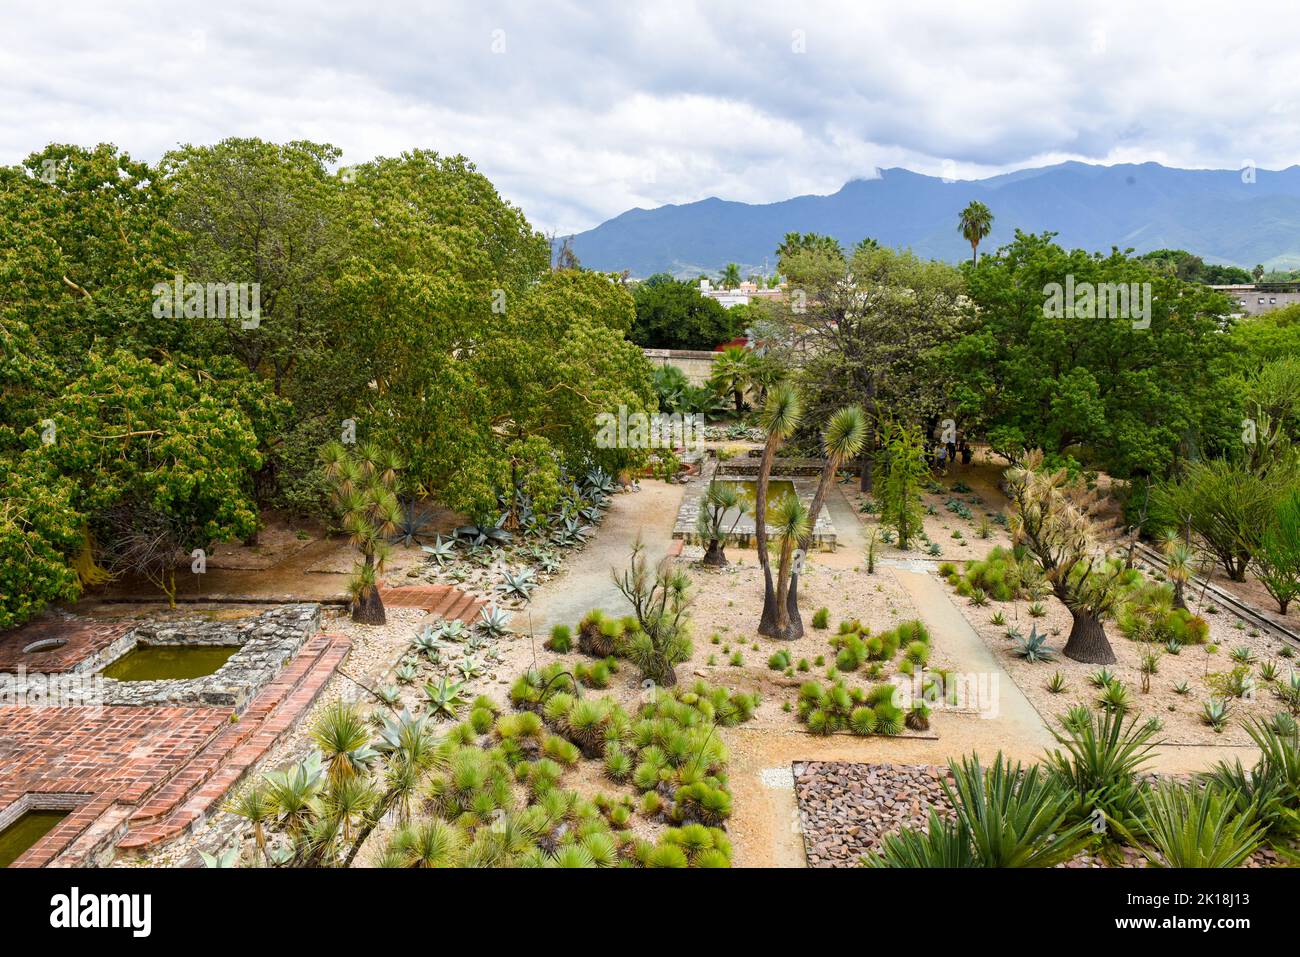 El Jardín Etnobotánico de Oaxaca (adyacente a la Iglesia de Santo Domingo) tiene cientos de especies de plantas, todas nativas del estado de Oaxaca. Oaxaca de Juárez, México. Foto de stock